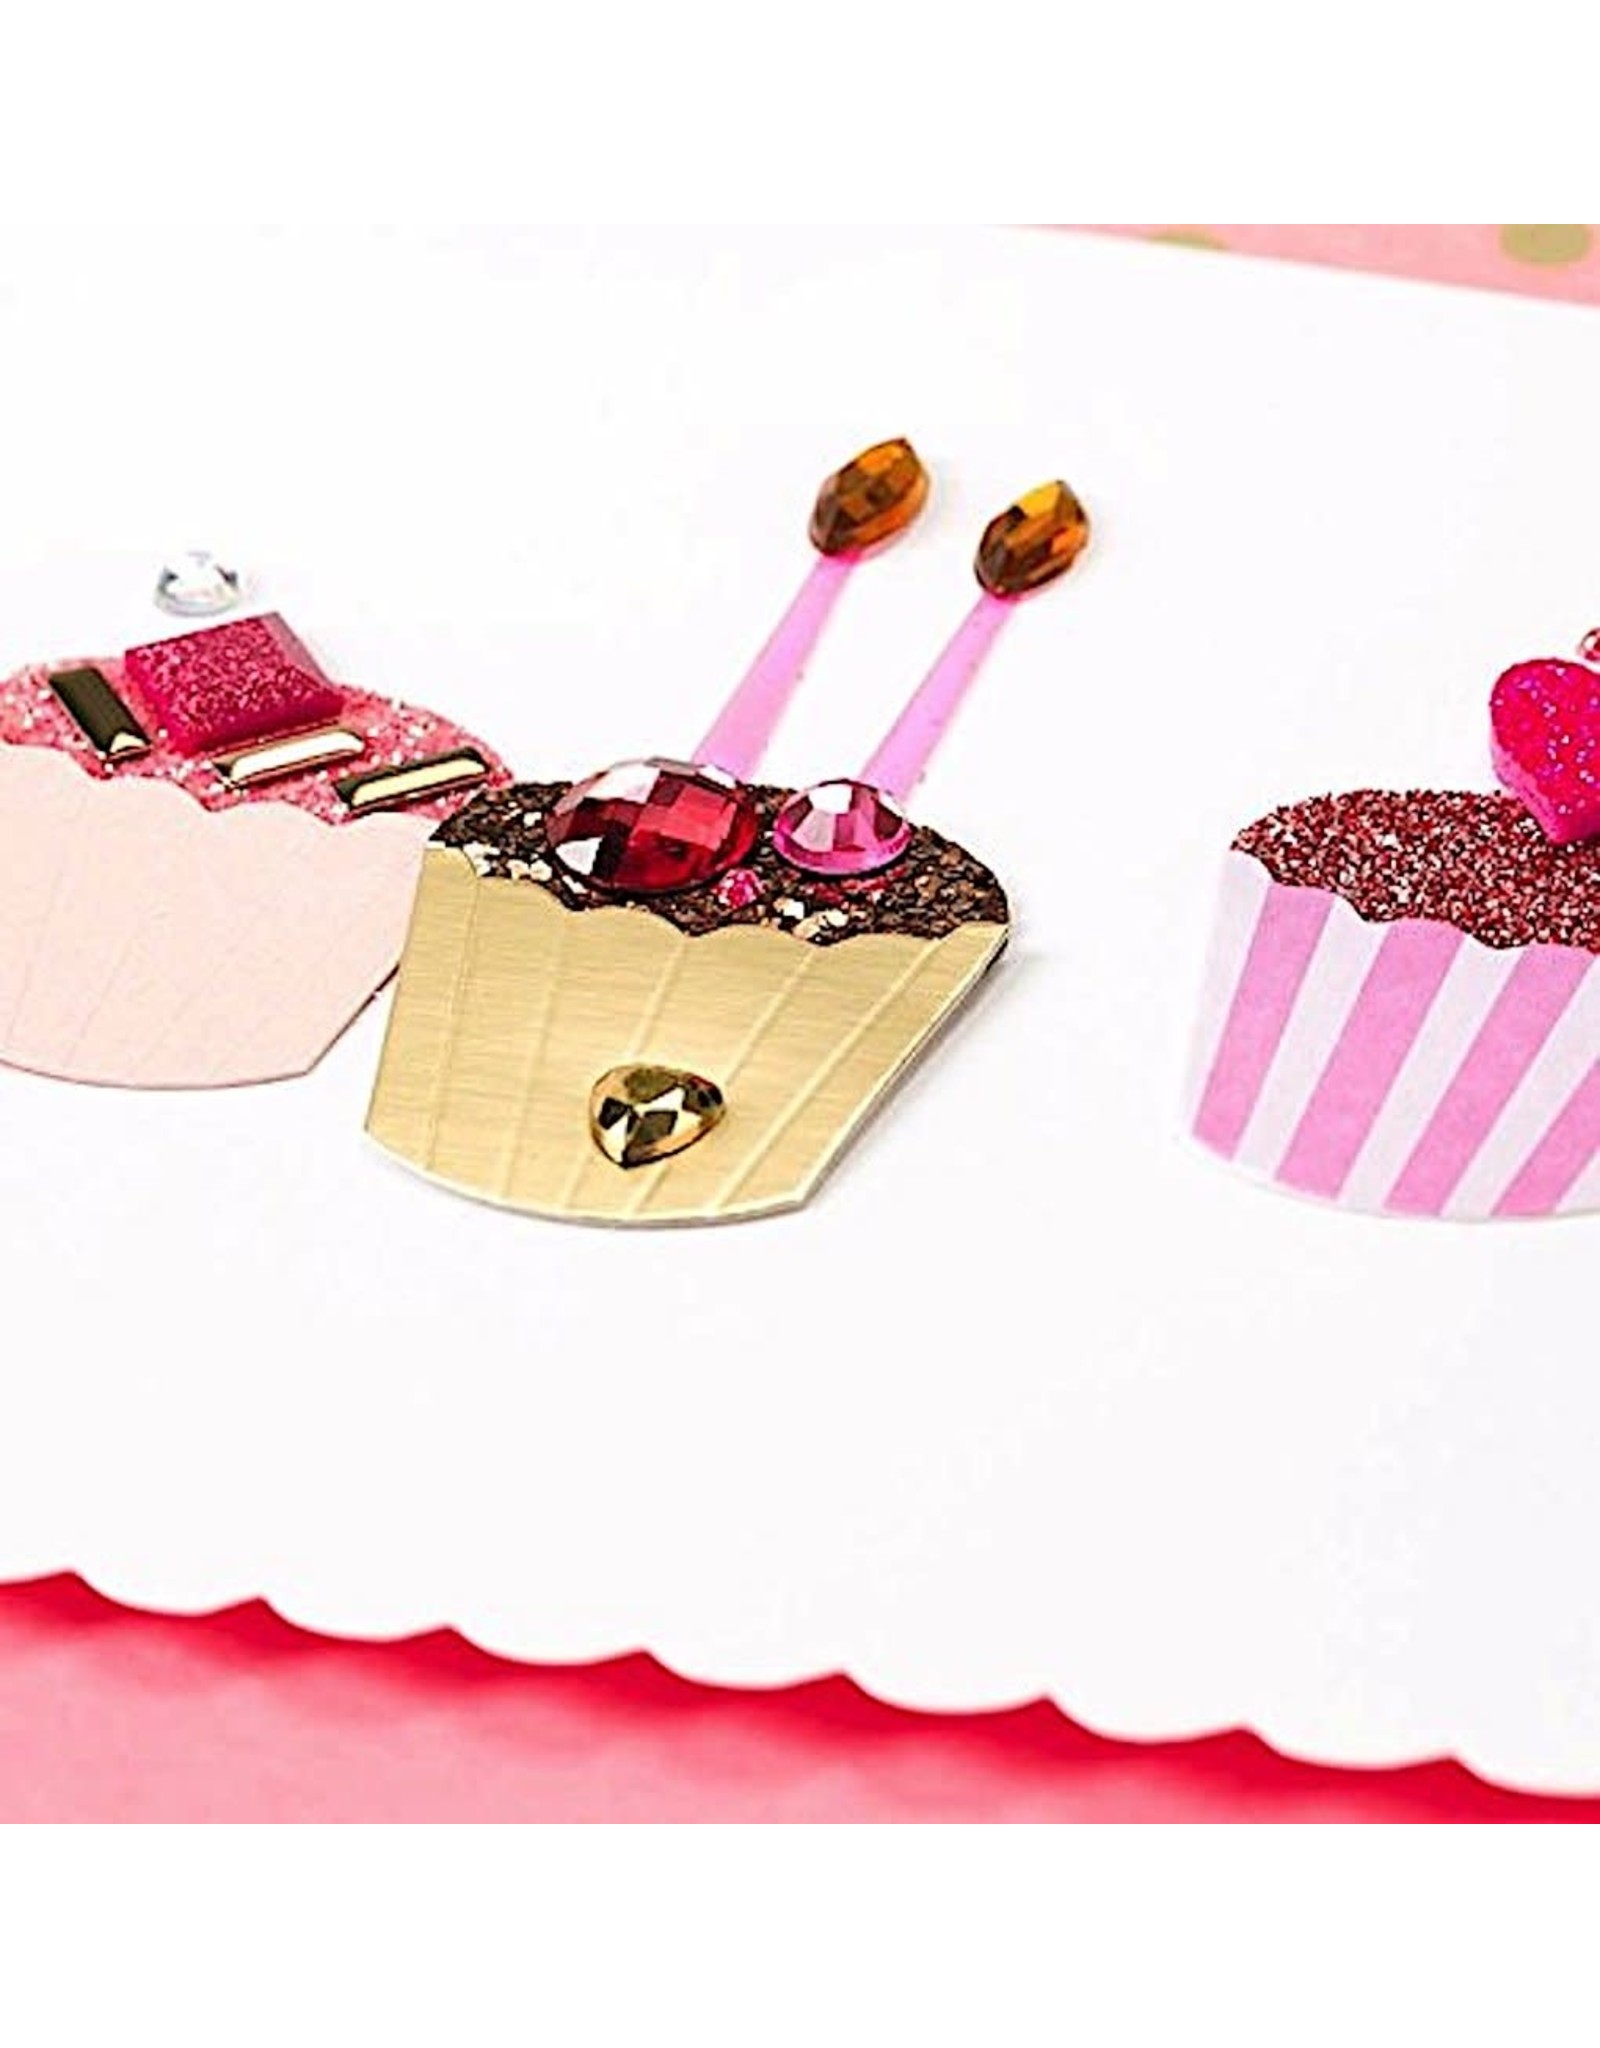 PAPYRUS® Birthday Cards Fabulous Handmade Birthday Cupcakes